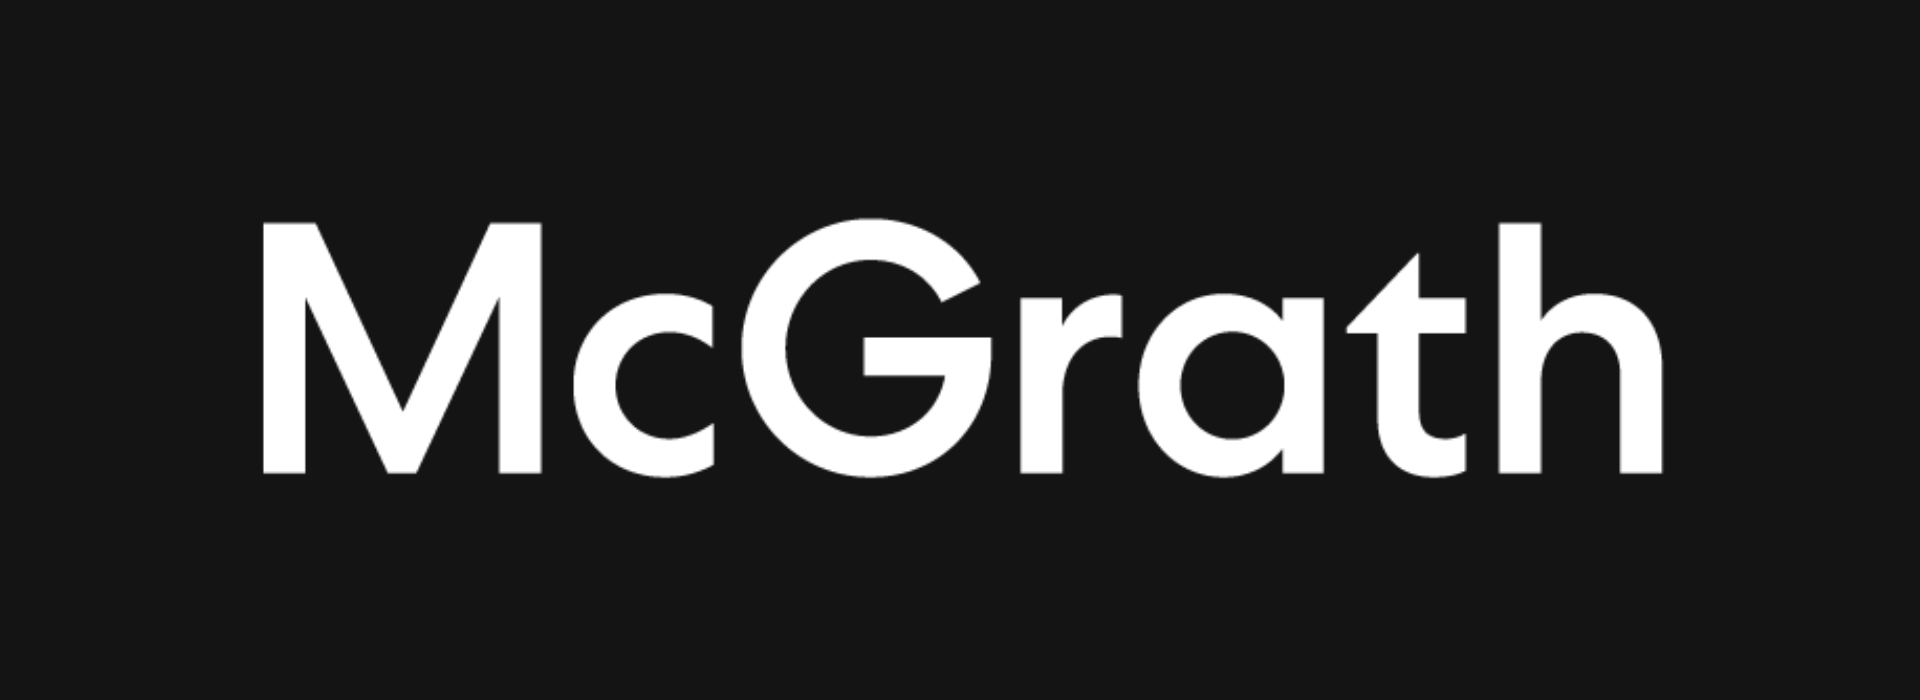 McGrath's logo